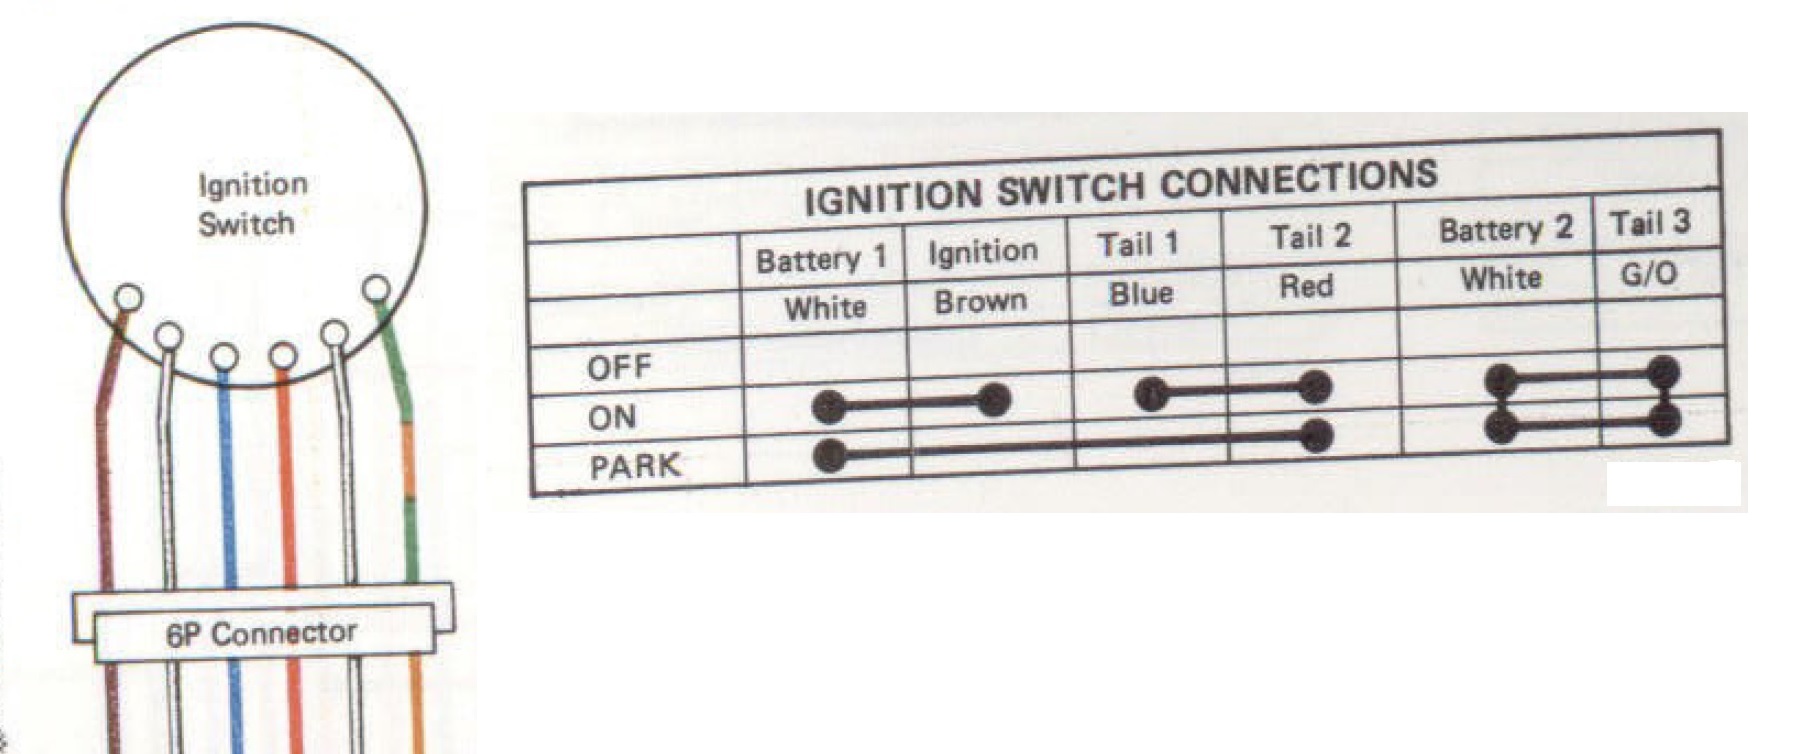 Ignition Switch Connector - KZRider Forum - KZRider, KZ, Z1 & Z